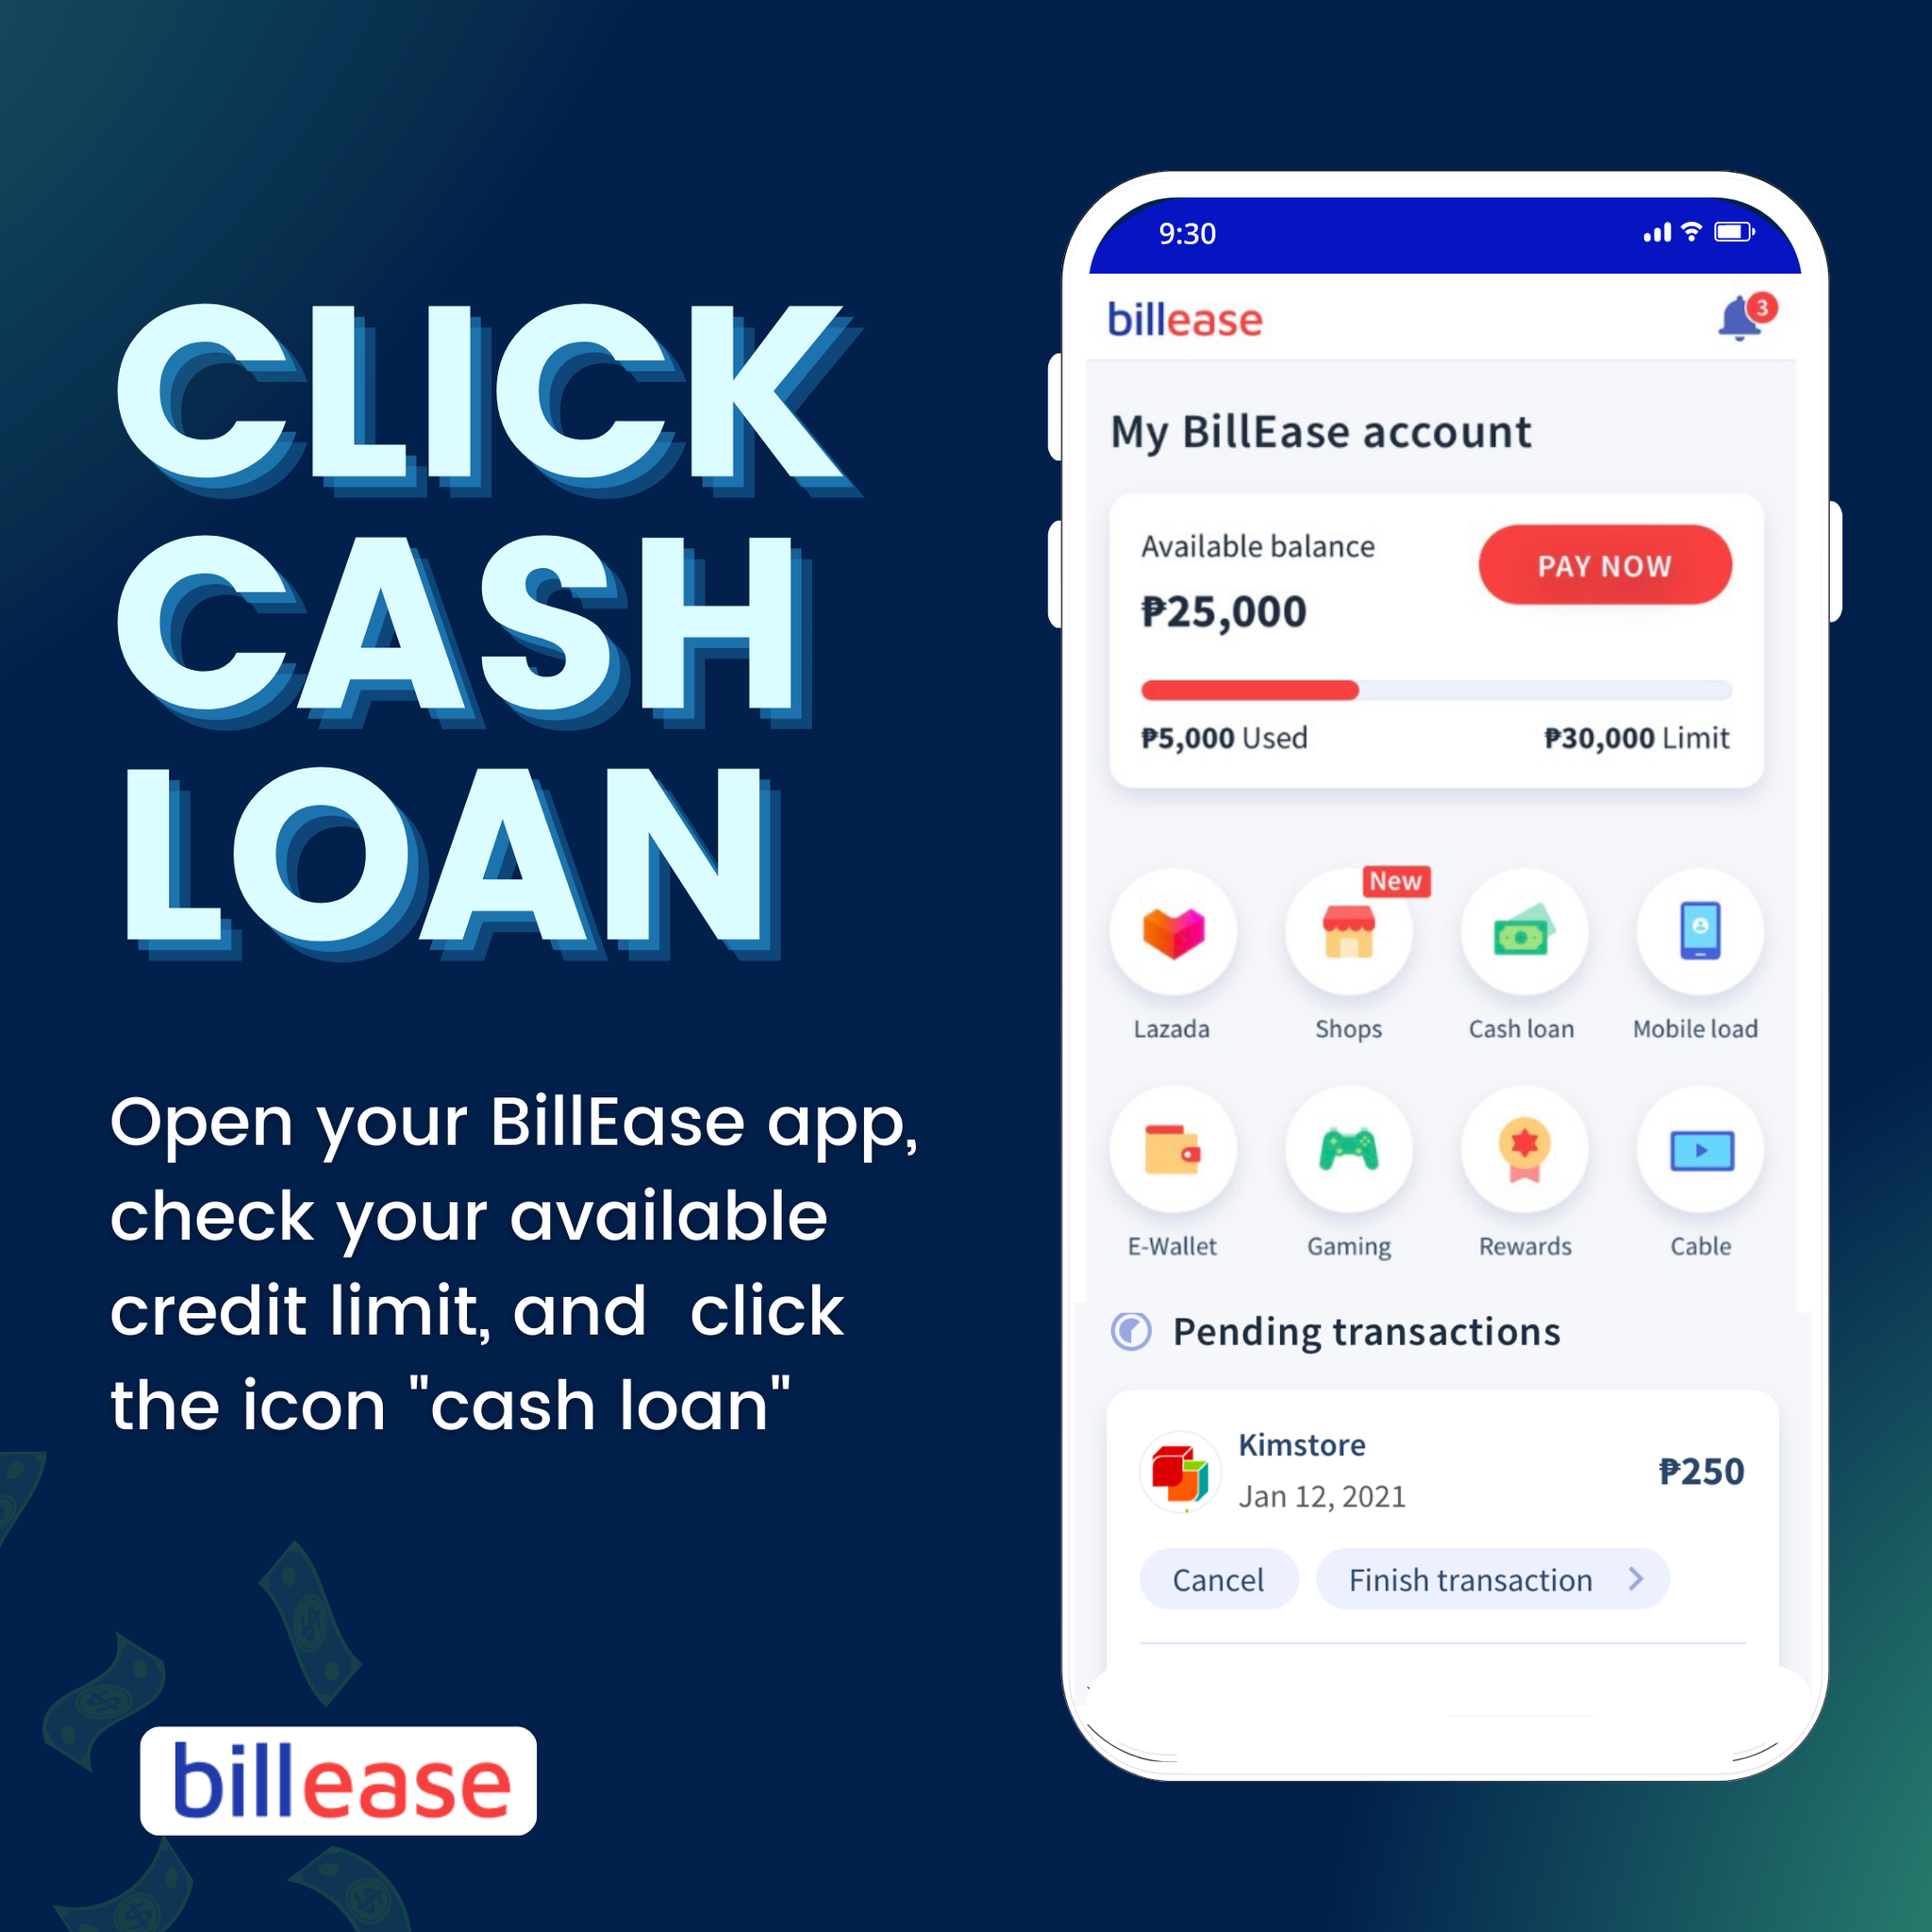 billease loan - how to apply for billease cash loan